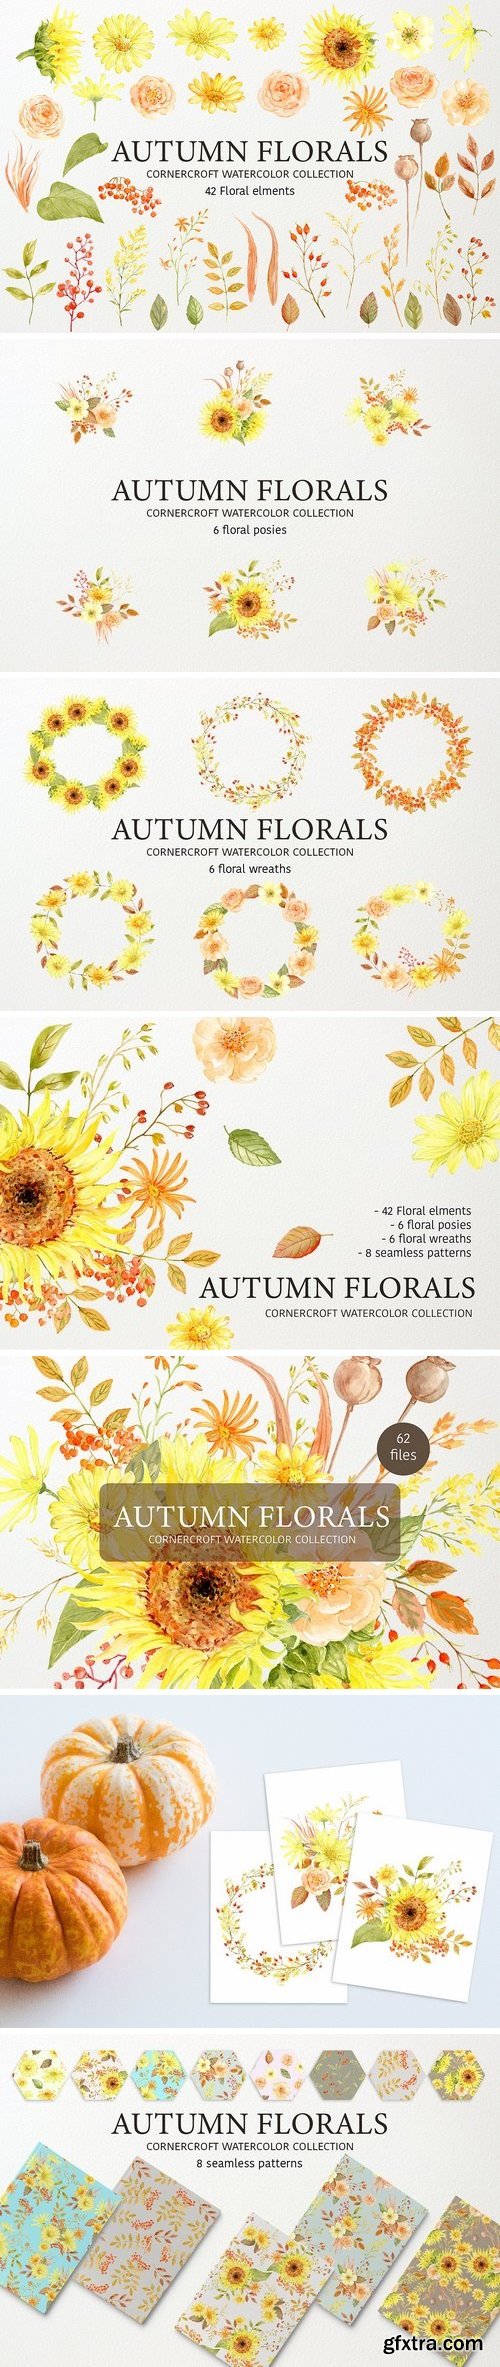 CM - Autumn Floral Collection 2840864